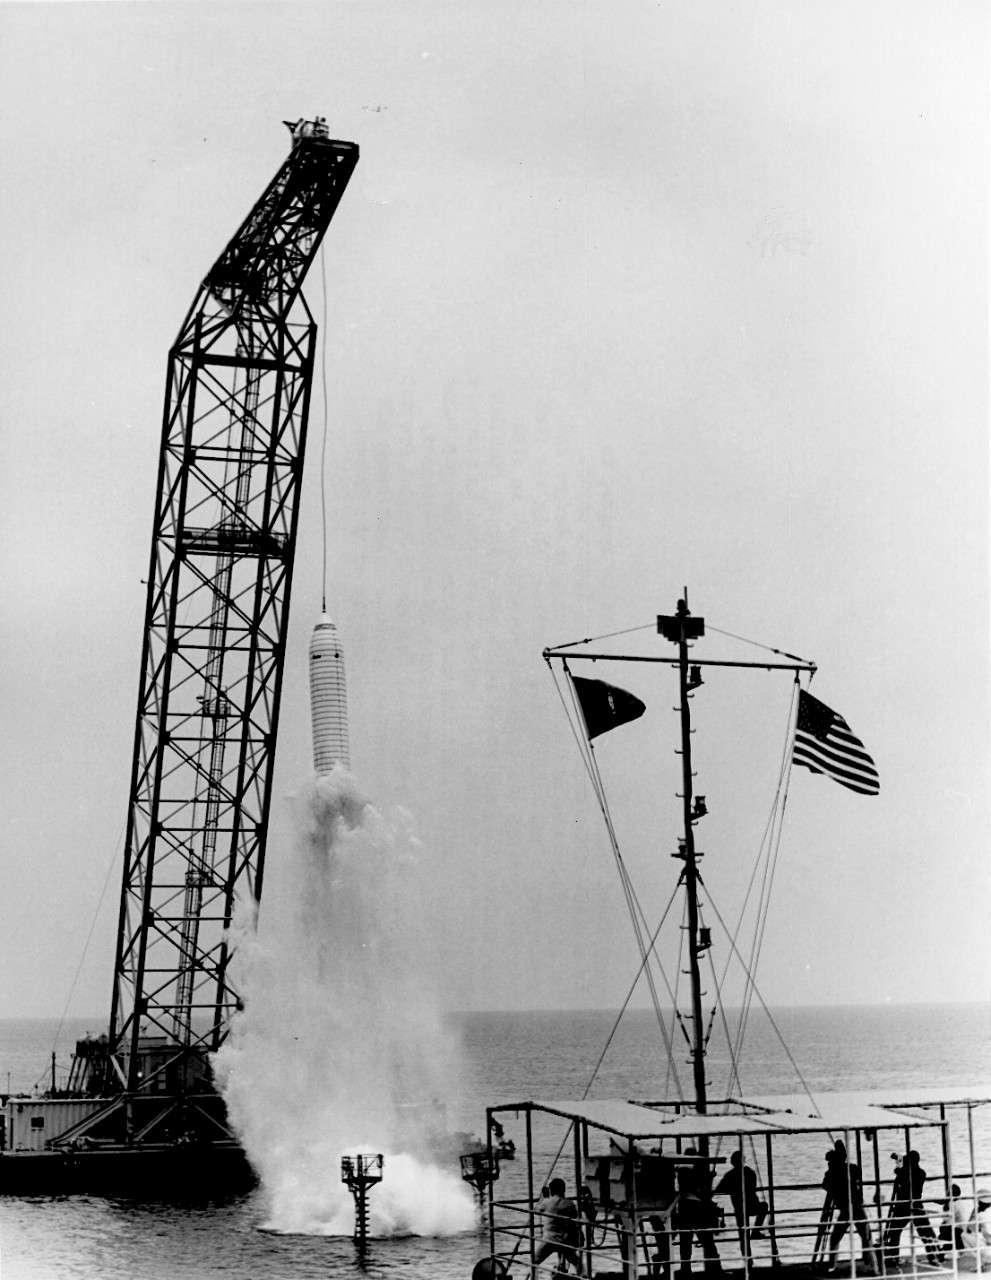 <p>L55-15.04.09 Poseidon test launch</p>
